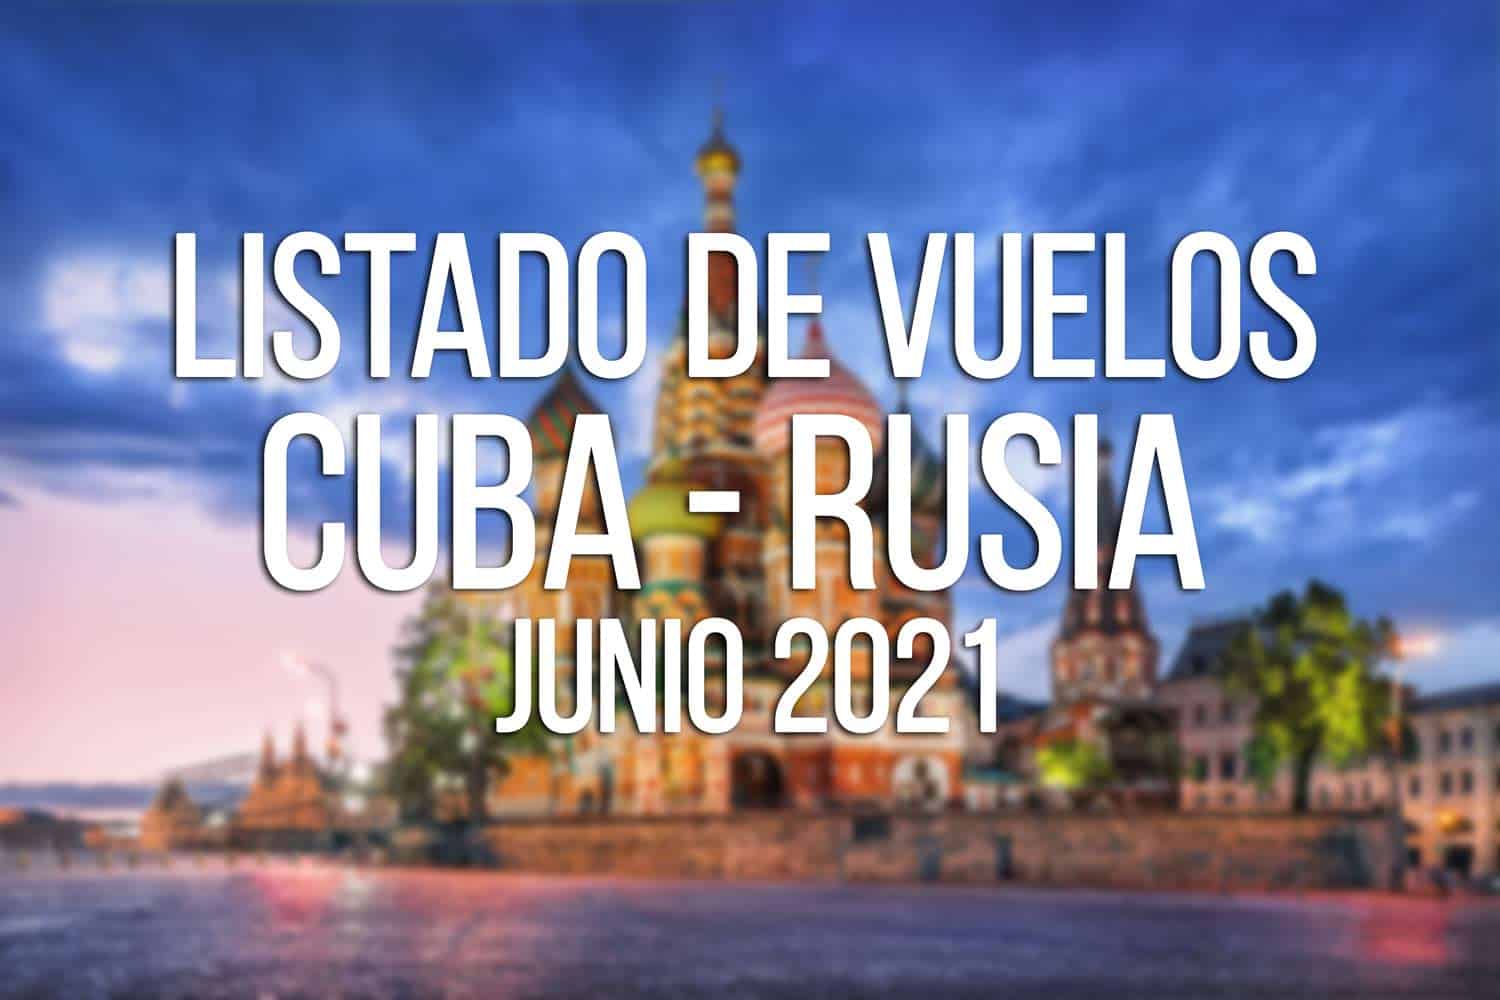 vuelos cuba rusia junio 2021